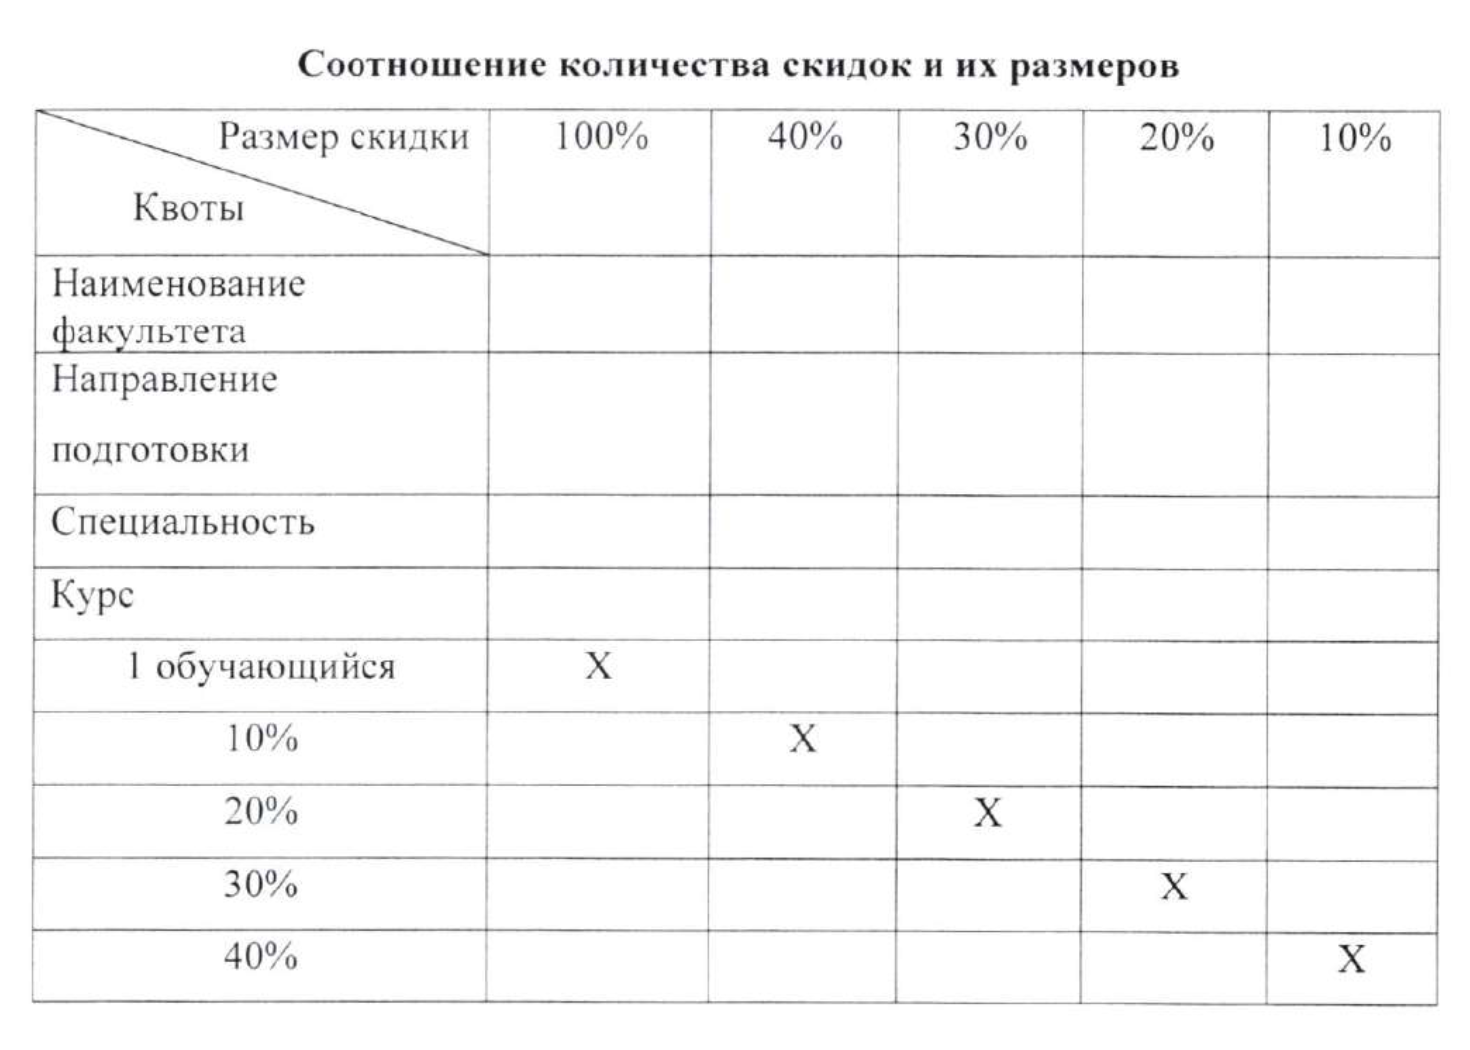 Таблица представлена в приложении № 1 к положению о предоставлении скидок Финансового университета. Источник: fa.ru